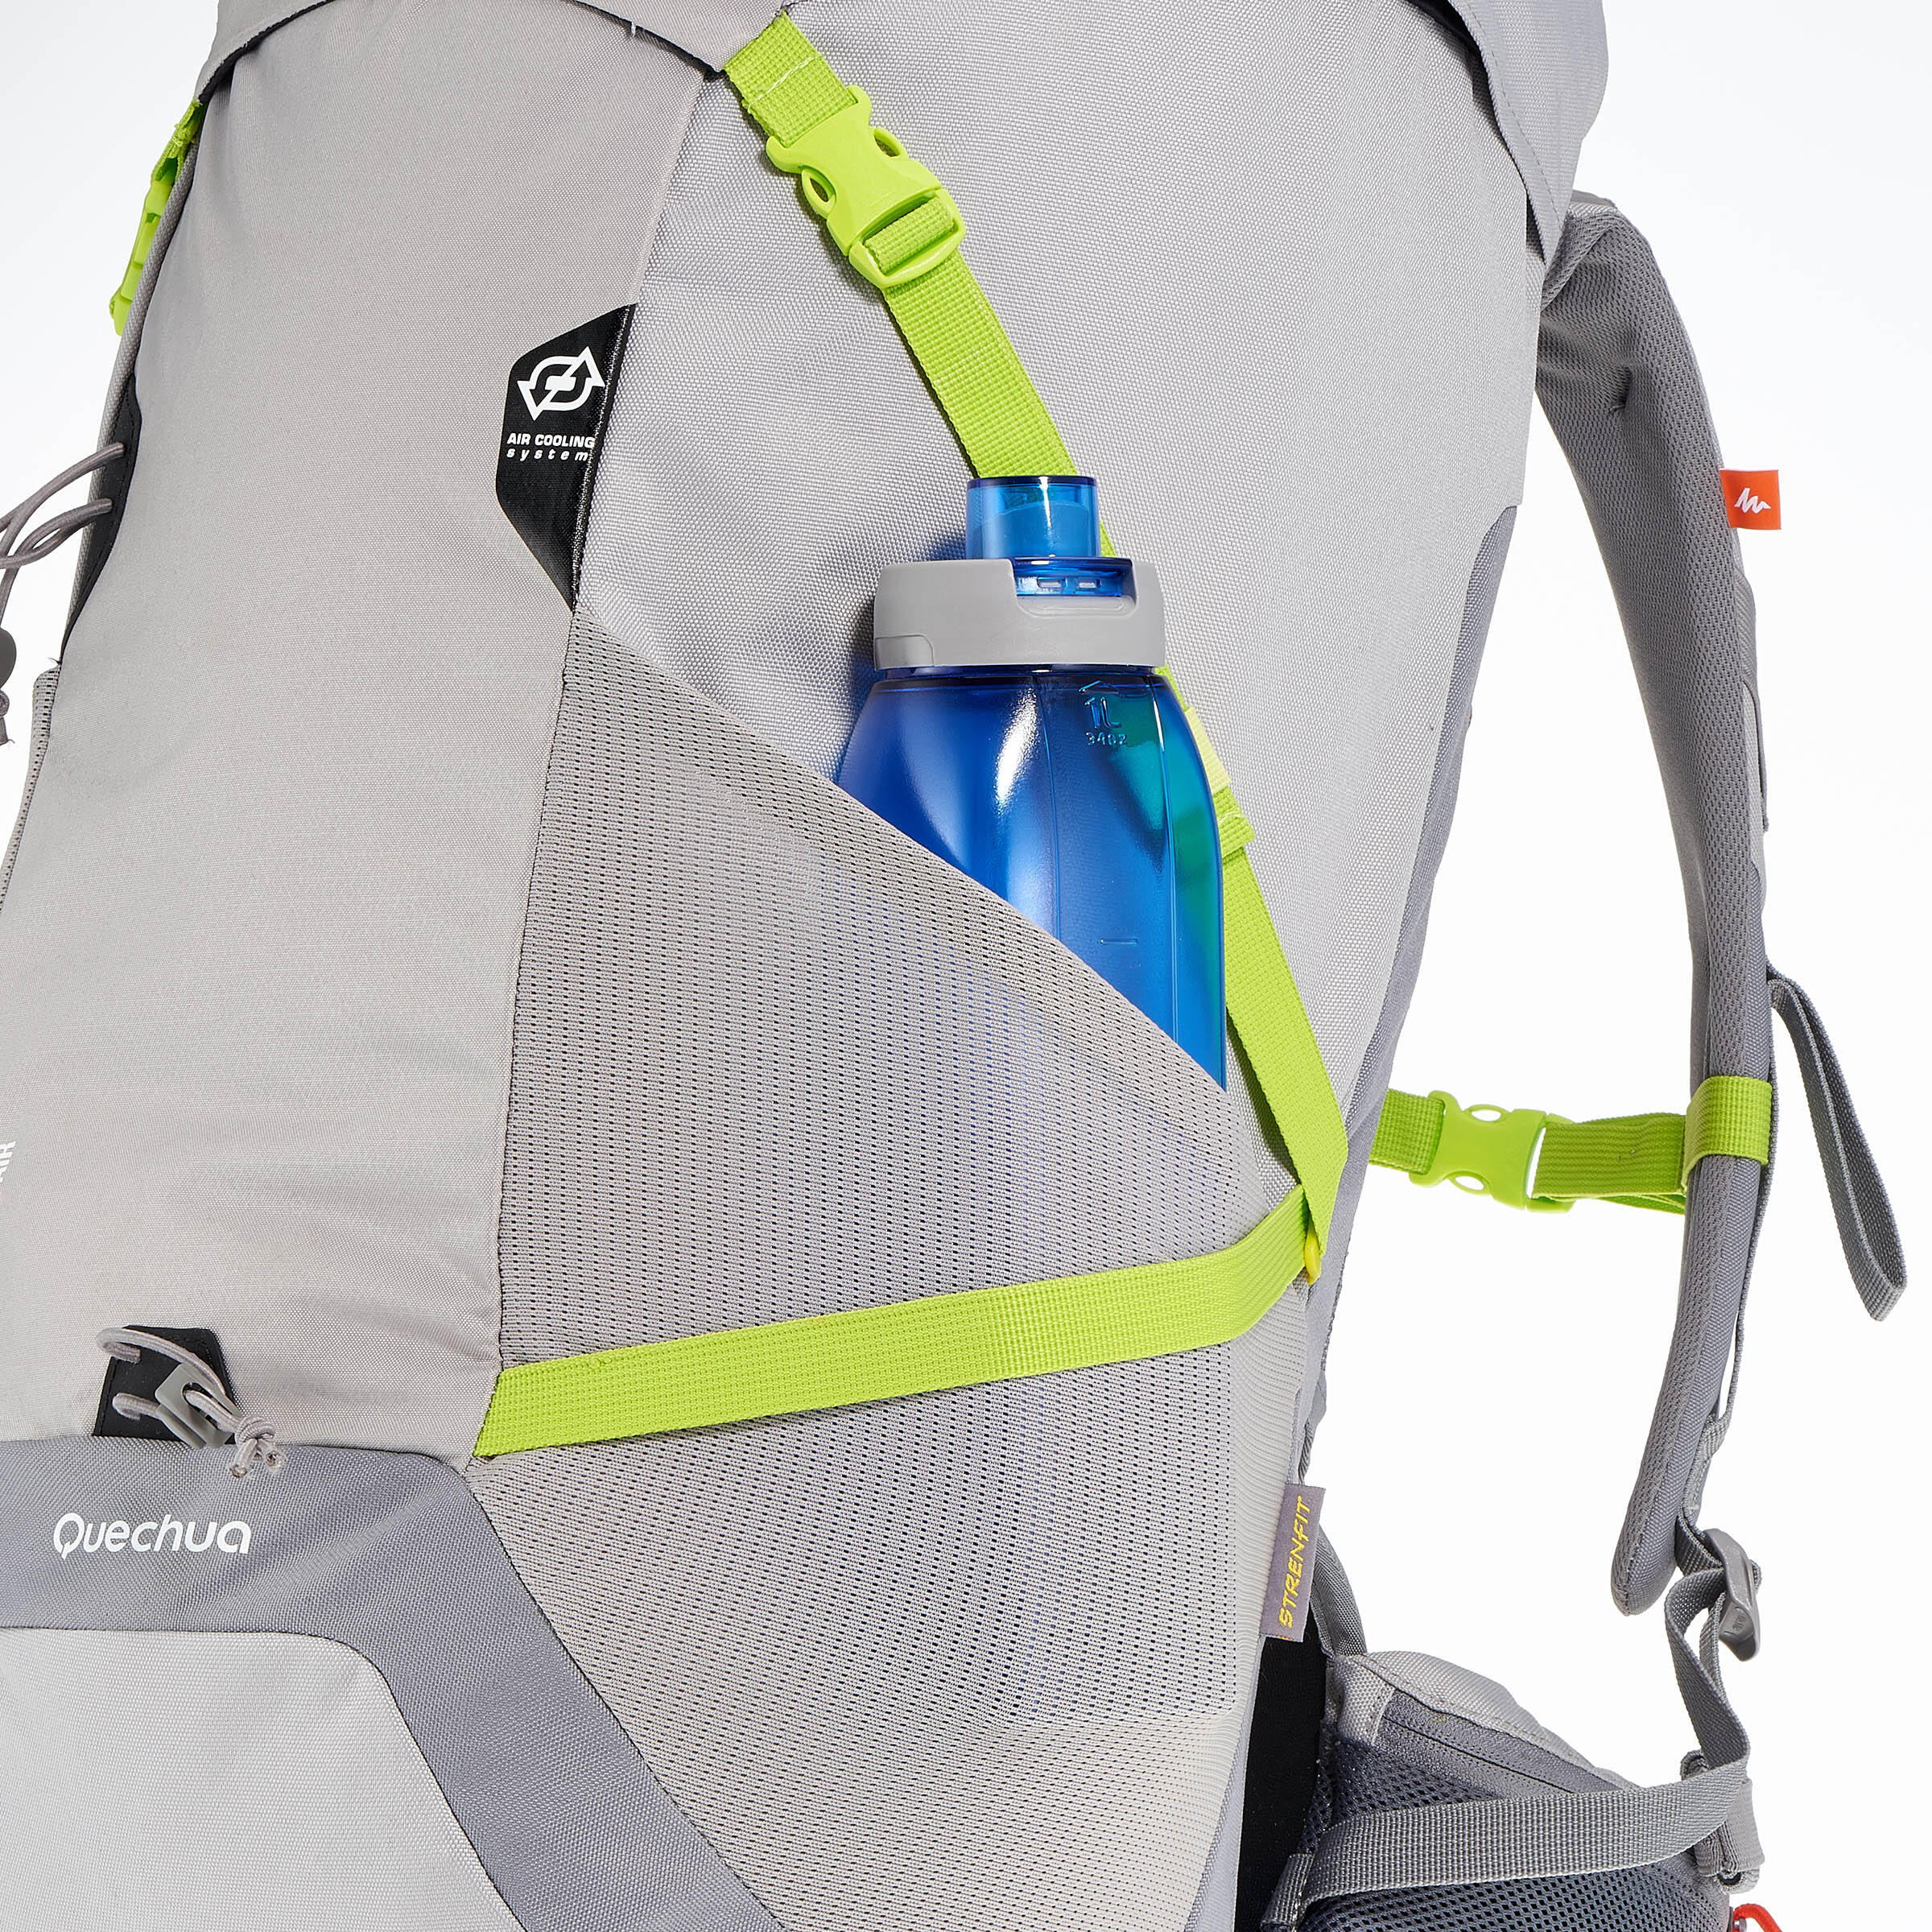 FORCLAZ 40 AIR backpack BLUE: AIR COOLING Label - regulates back perspiration 17/19